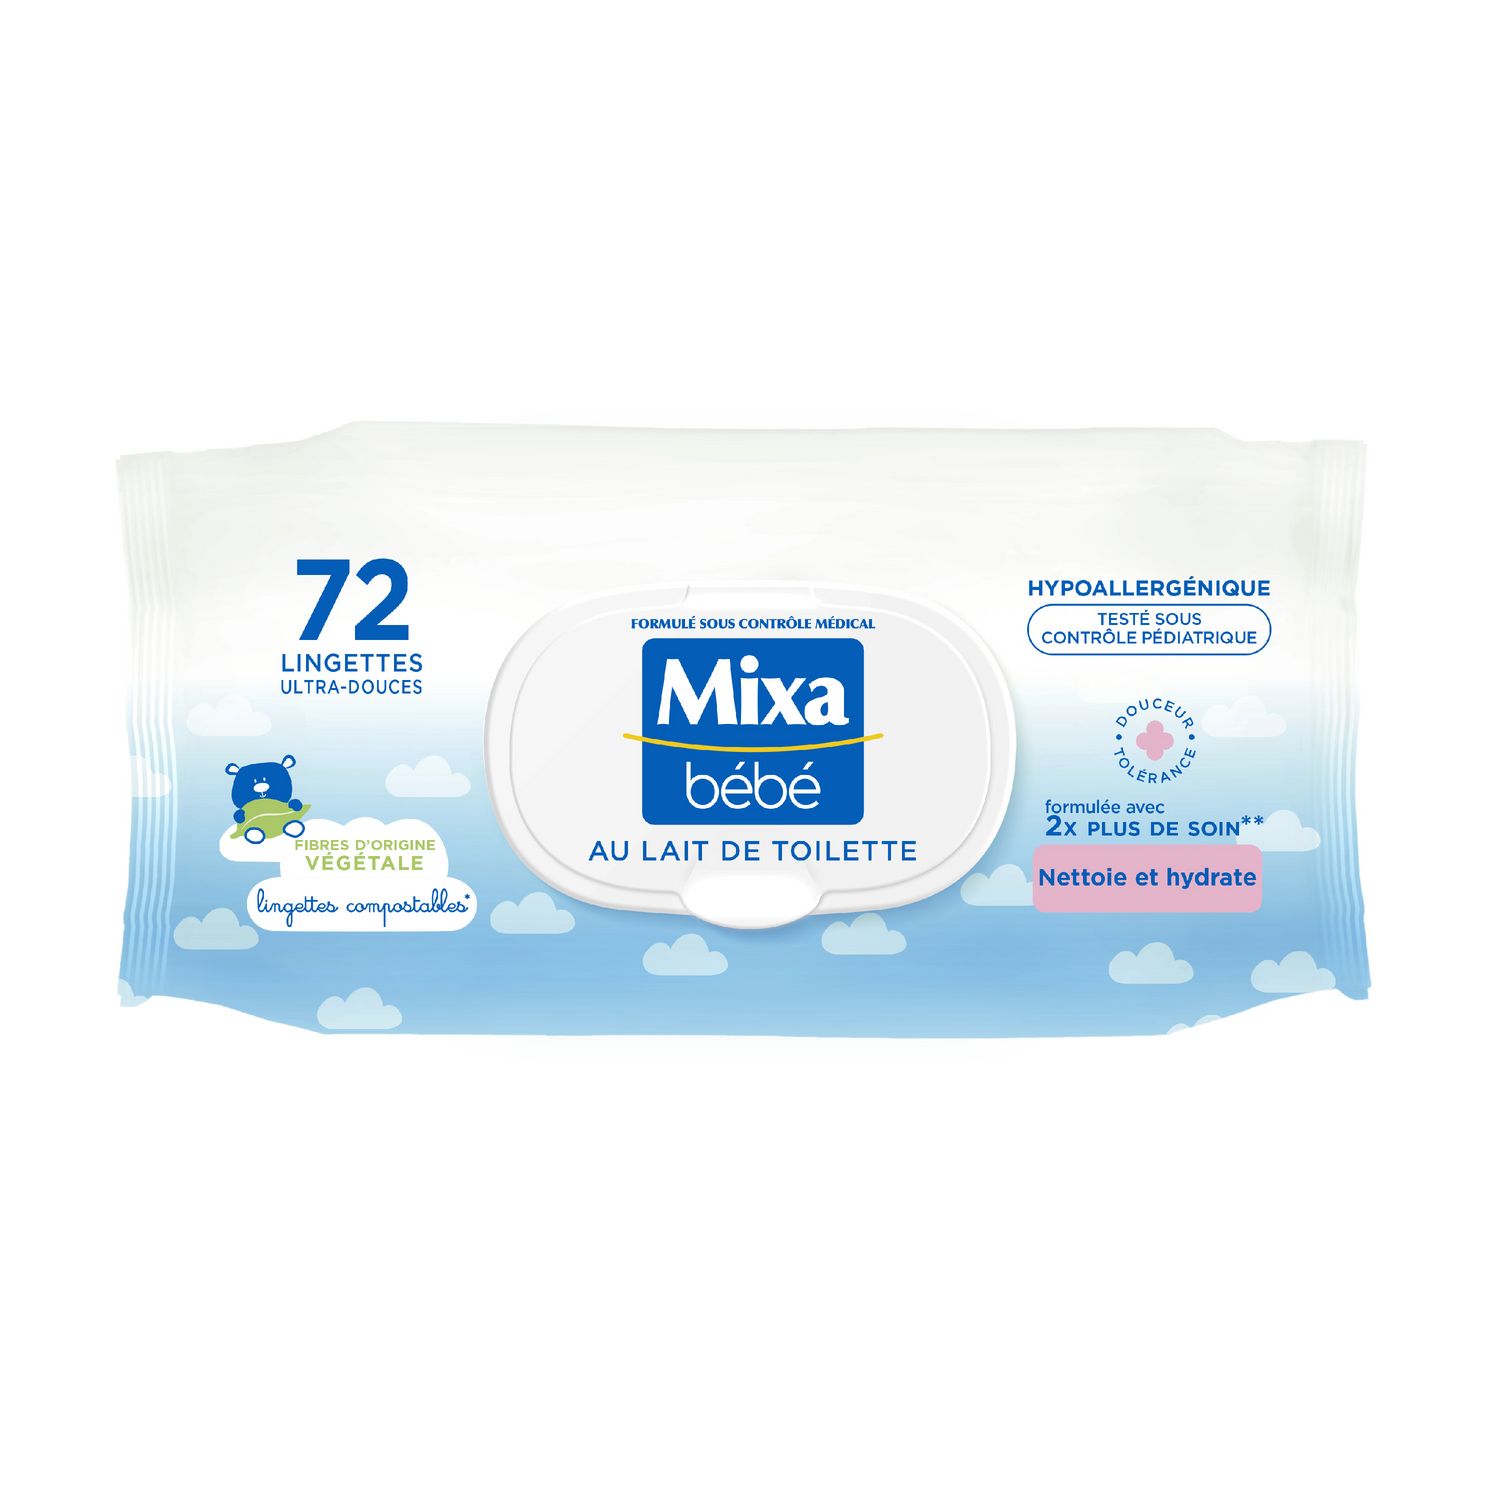 MIXA BEBE Lingettes ultra-douce au lait de toilette 72 lingettes pas